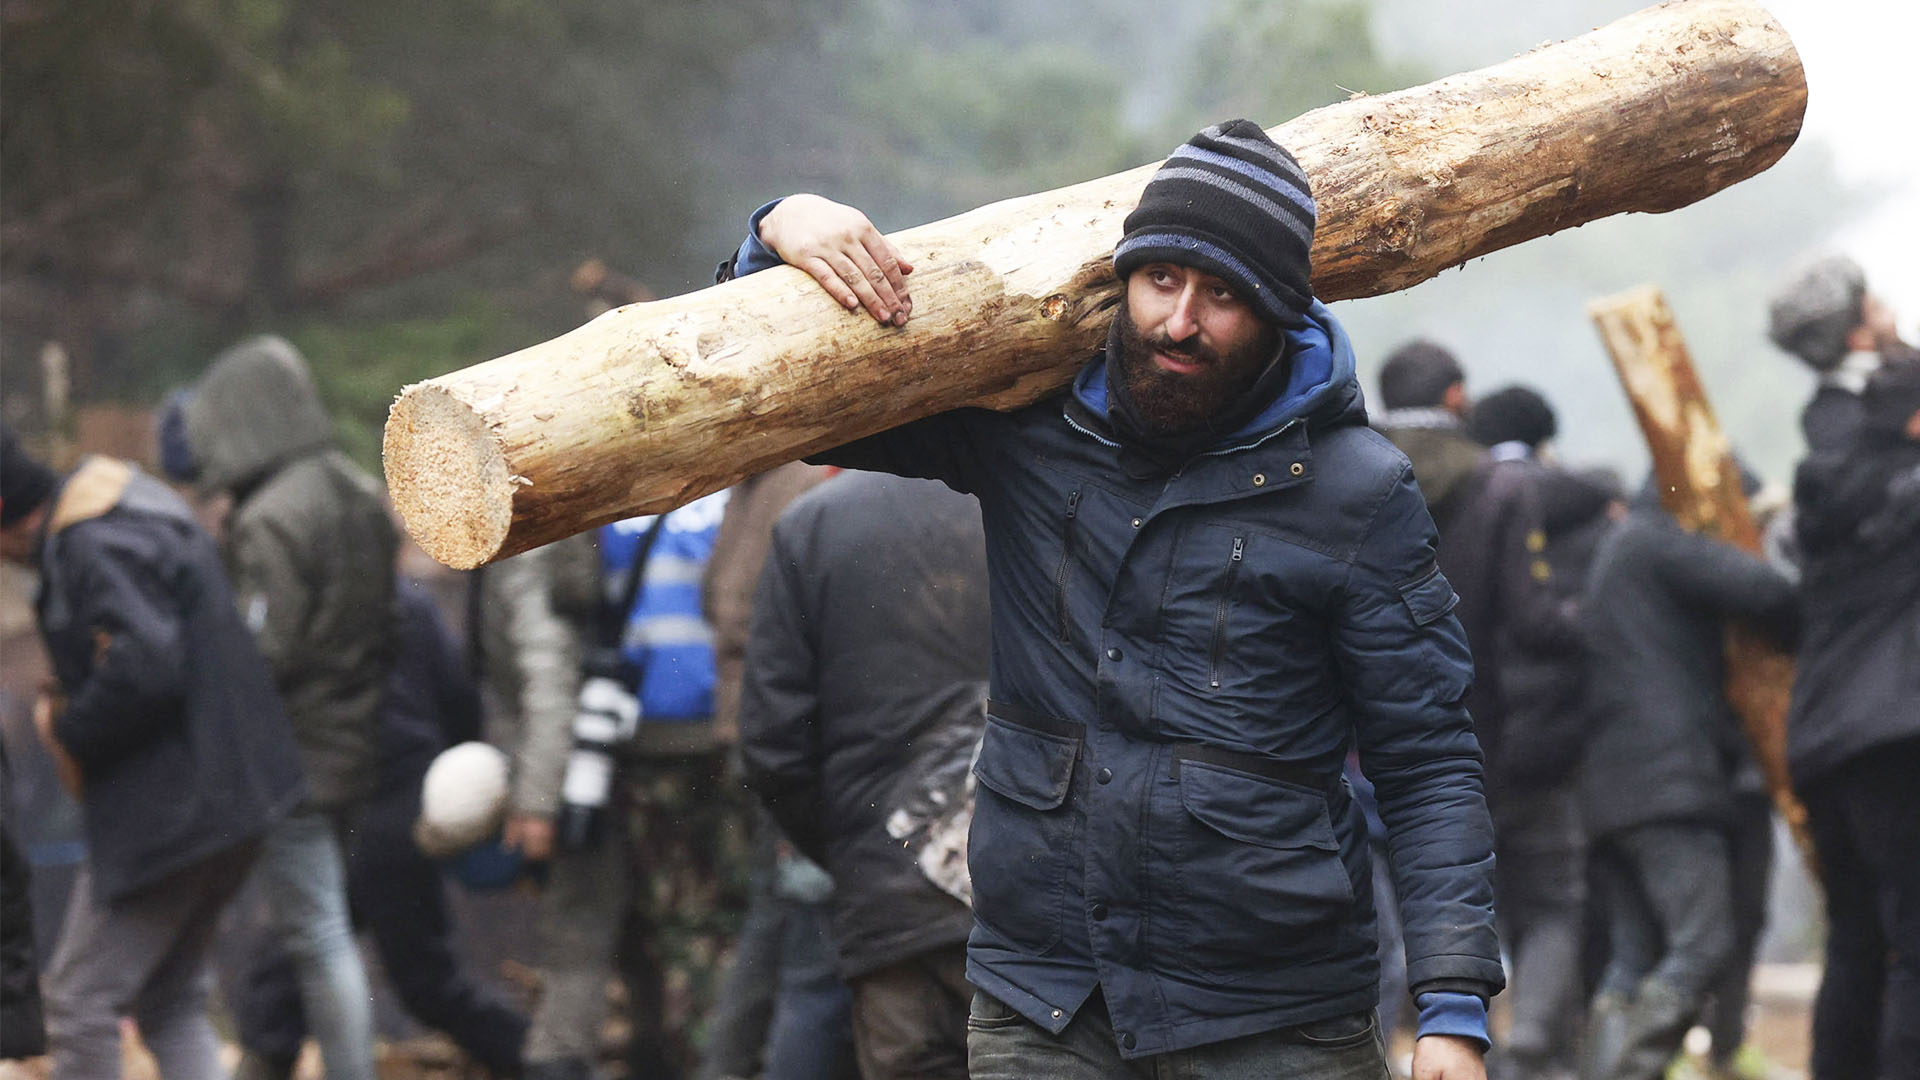 Мигранты на границе с Польшей жгут дрова и готовятся к зиме